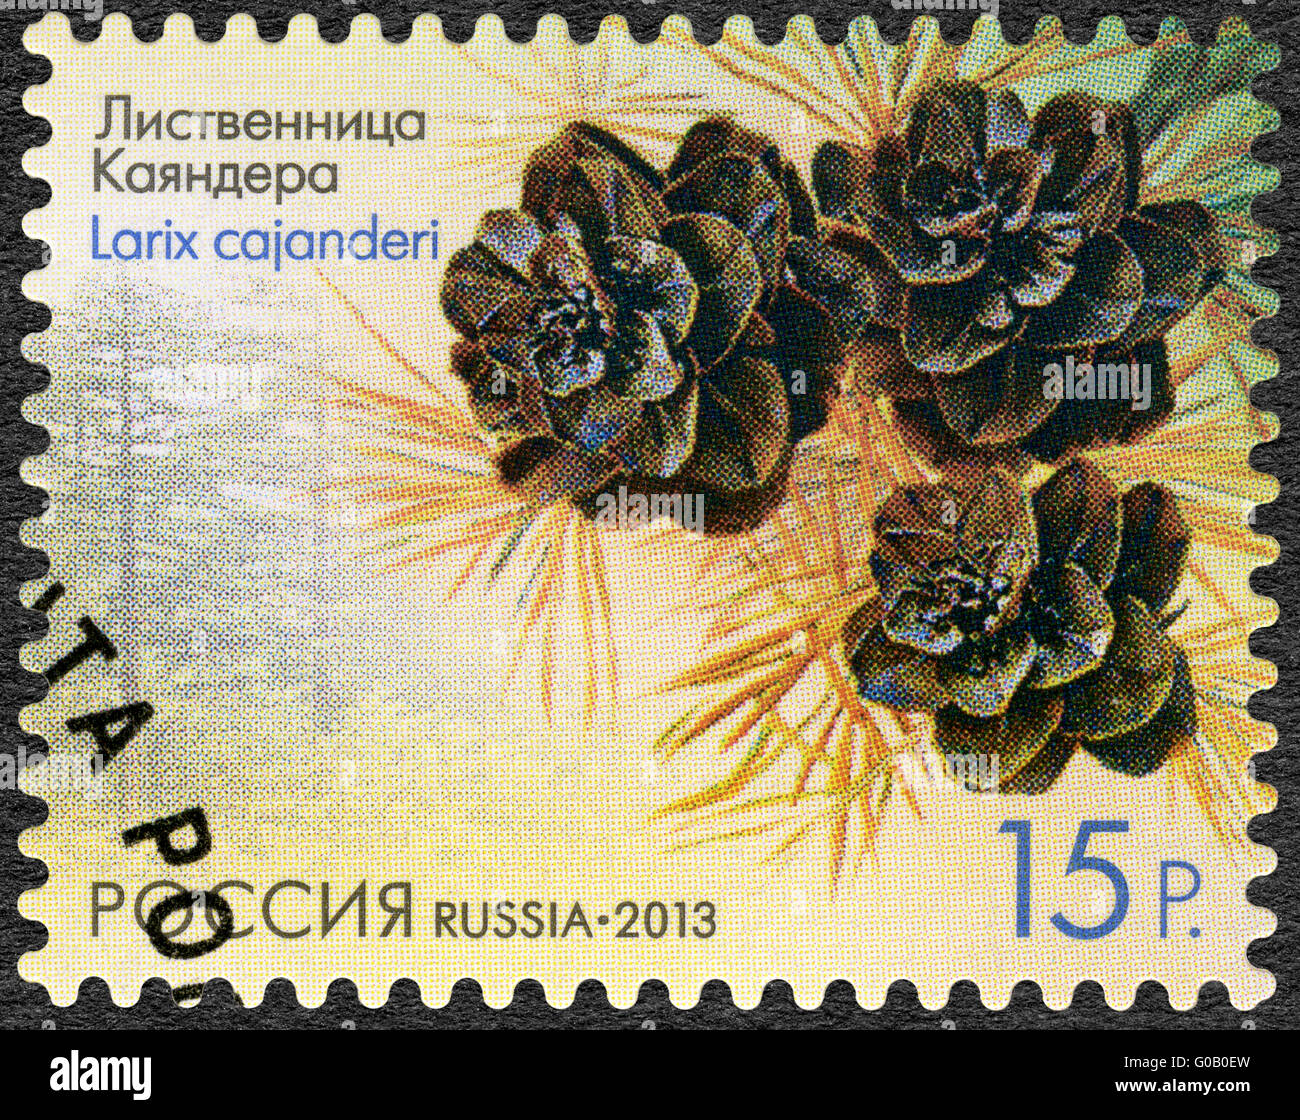 Russie - 2013 : affiche le mélèze (Larix cajanderi cajanderi), série de la flore de la Russie, de cônes de conifères et d'arbustes Banque D'Images